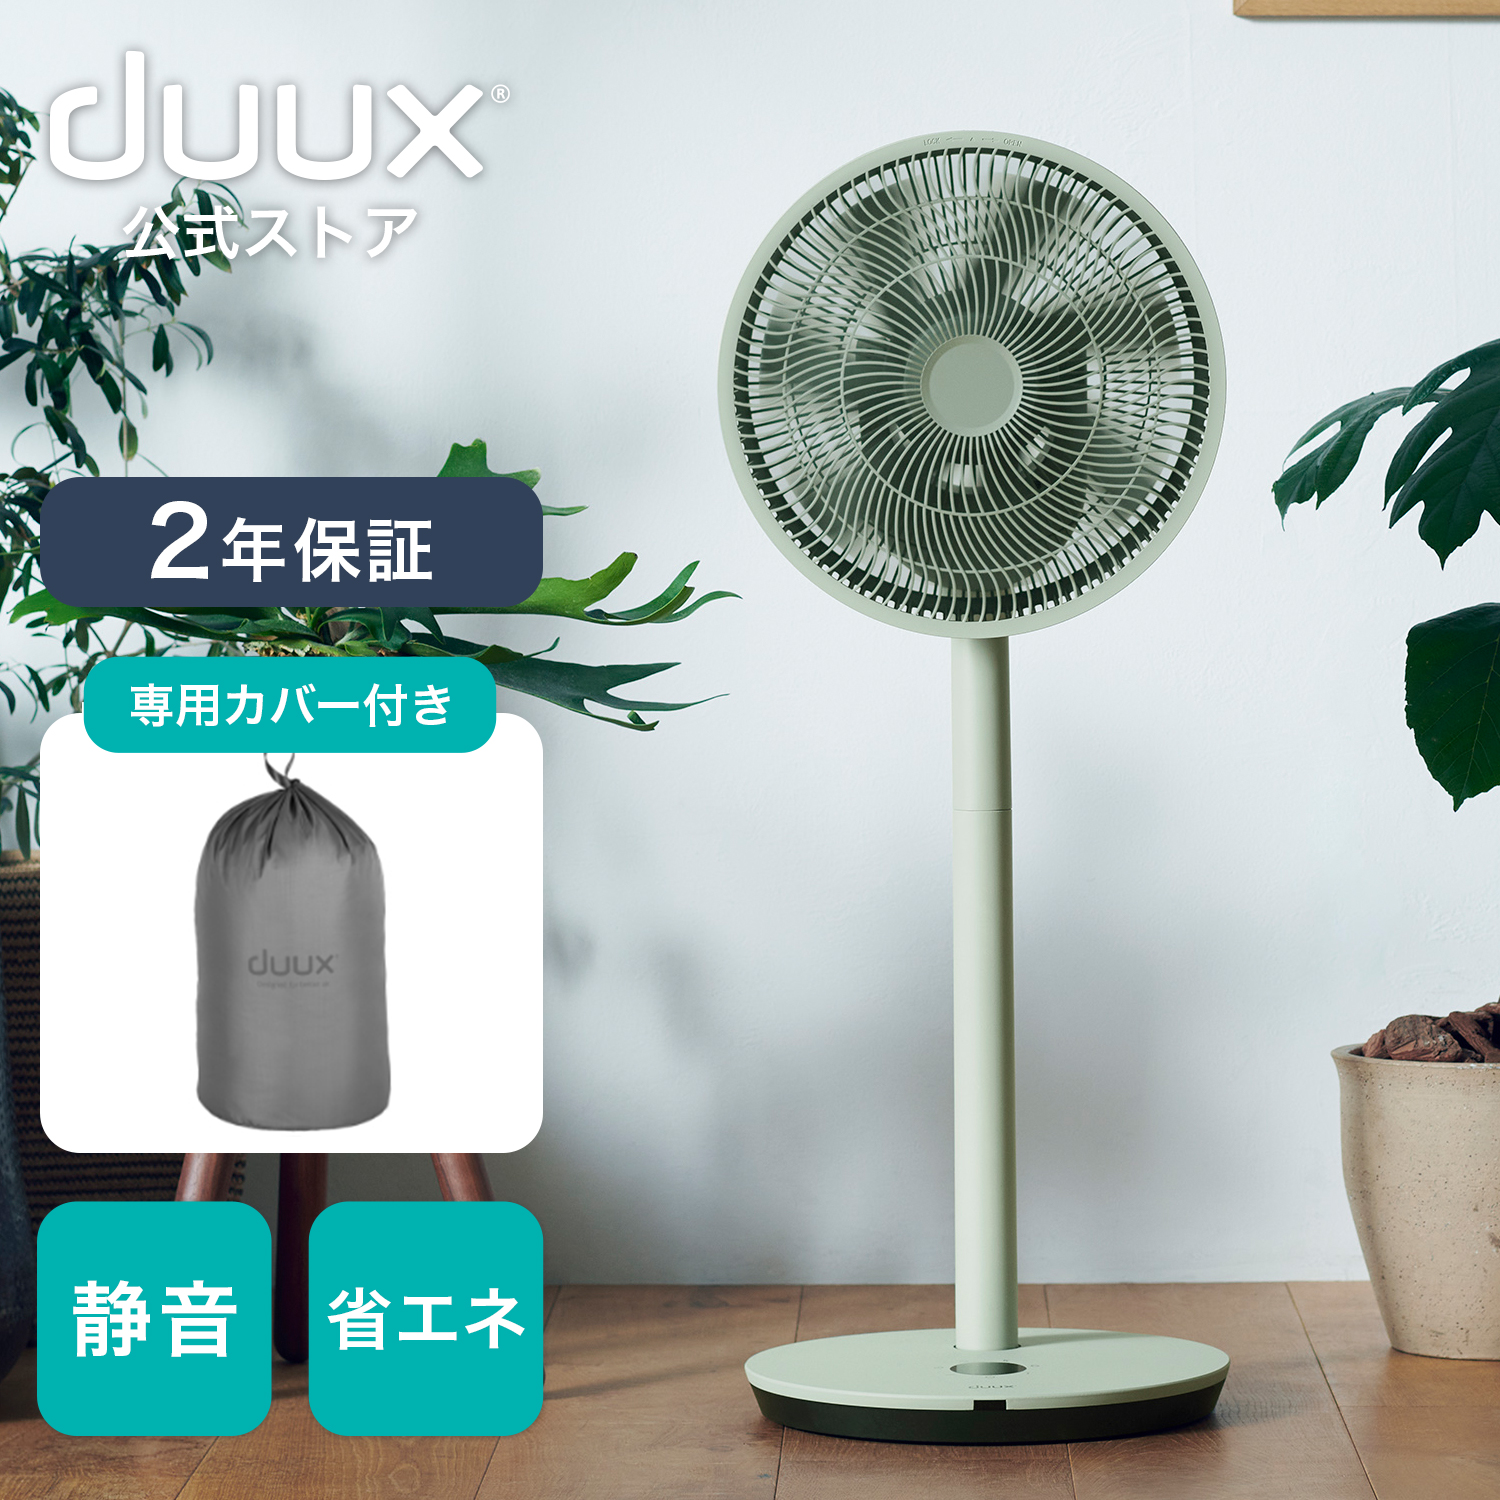 楽天市場】duux デュクス duux Fan専用バッテリーパック DXCFBP03JP 